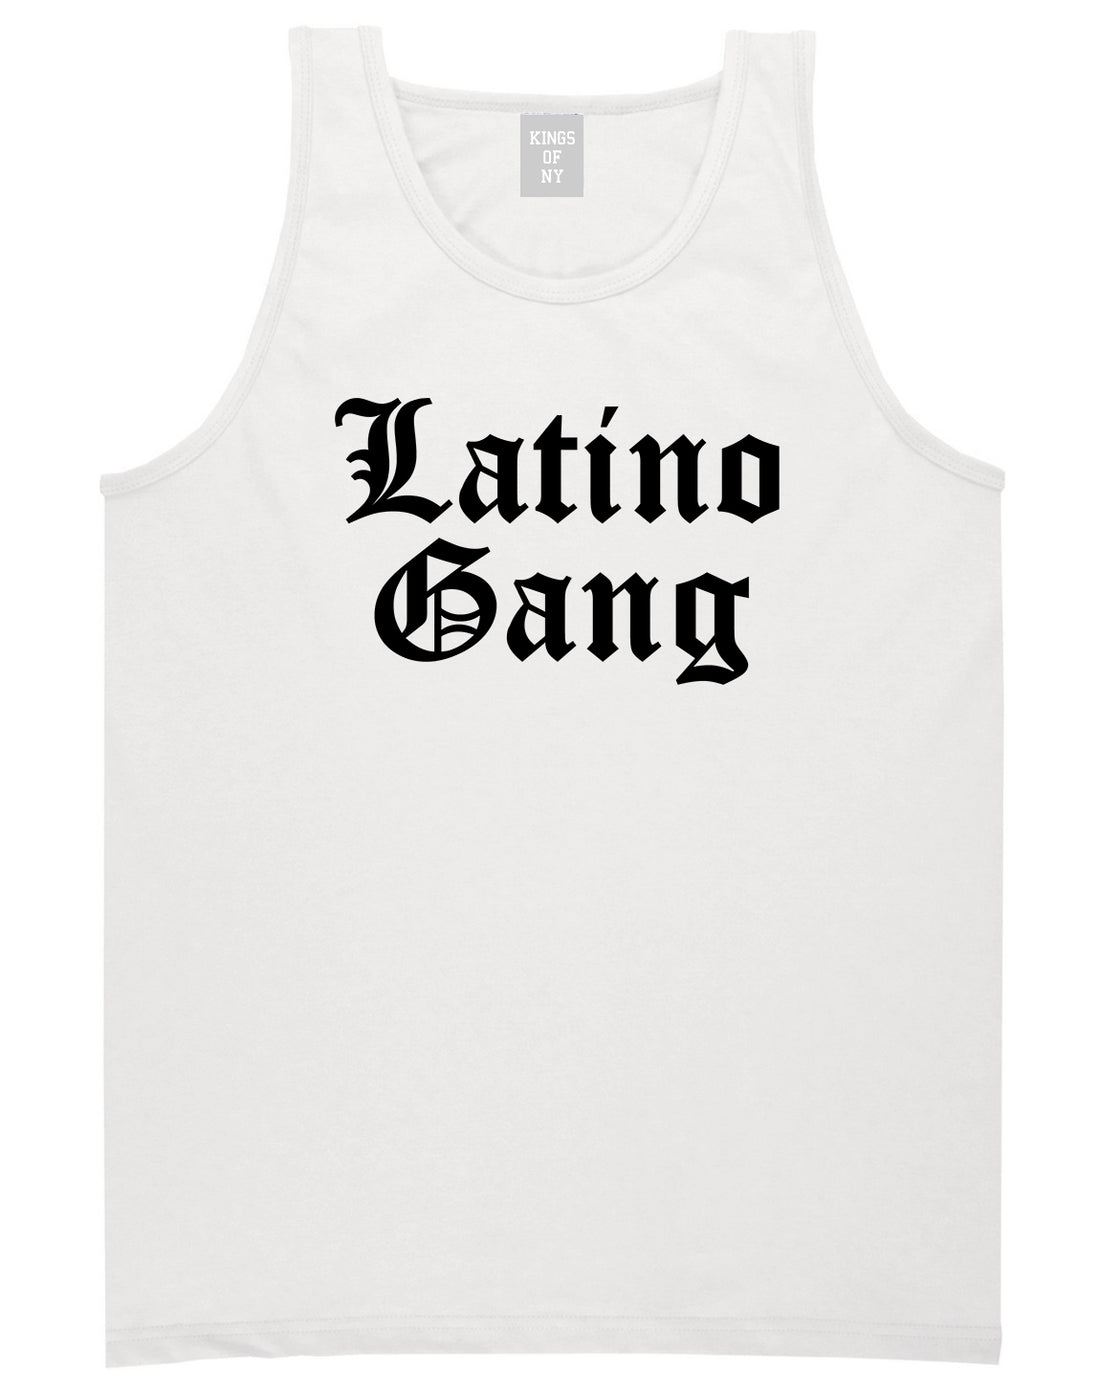 Latino Gang Mens Tank Top Shirt White by Kings Of NY